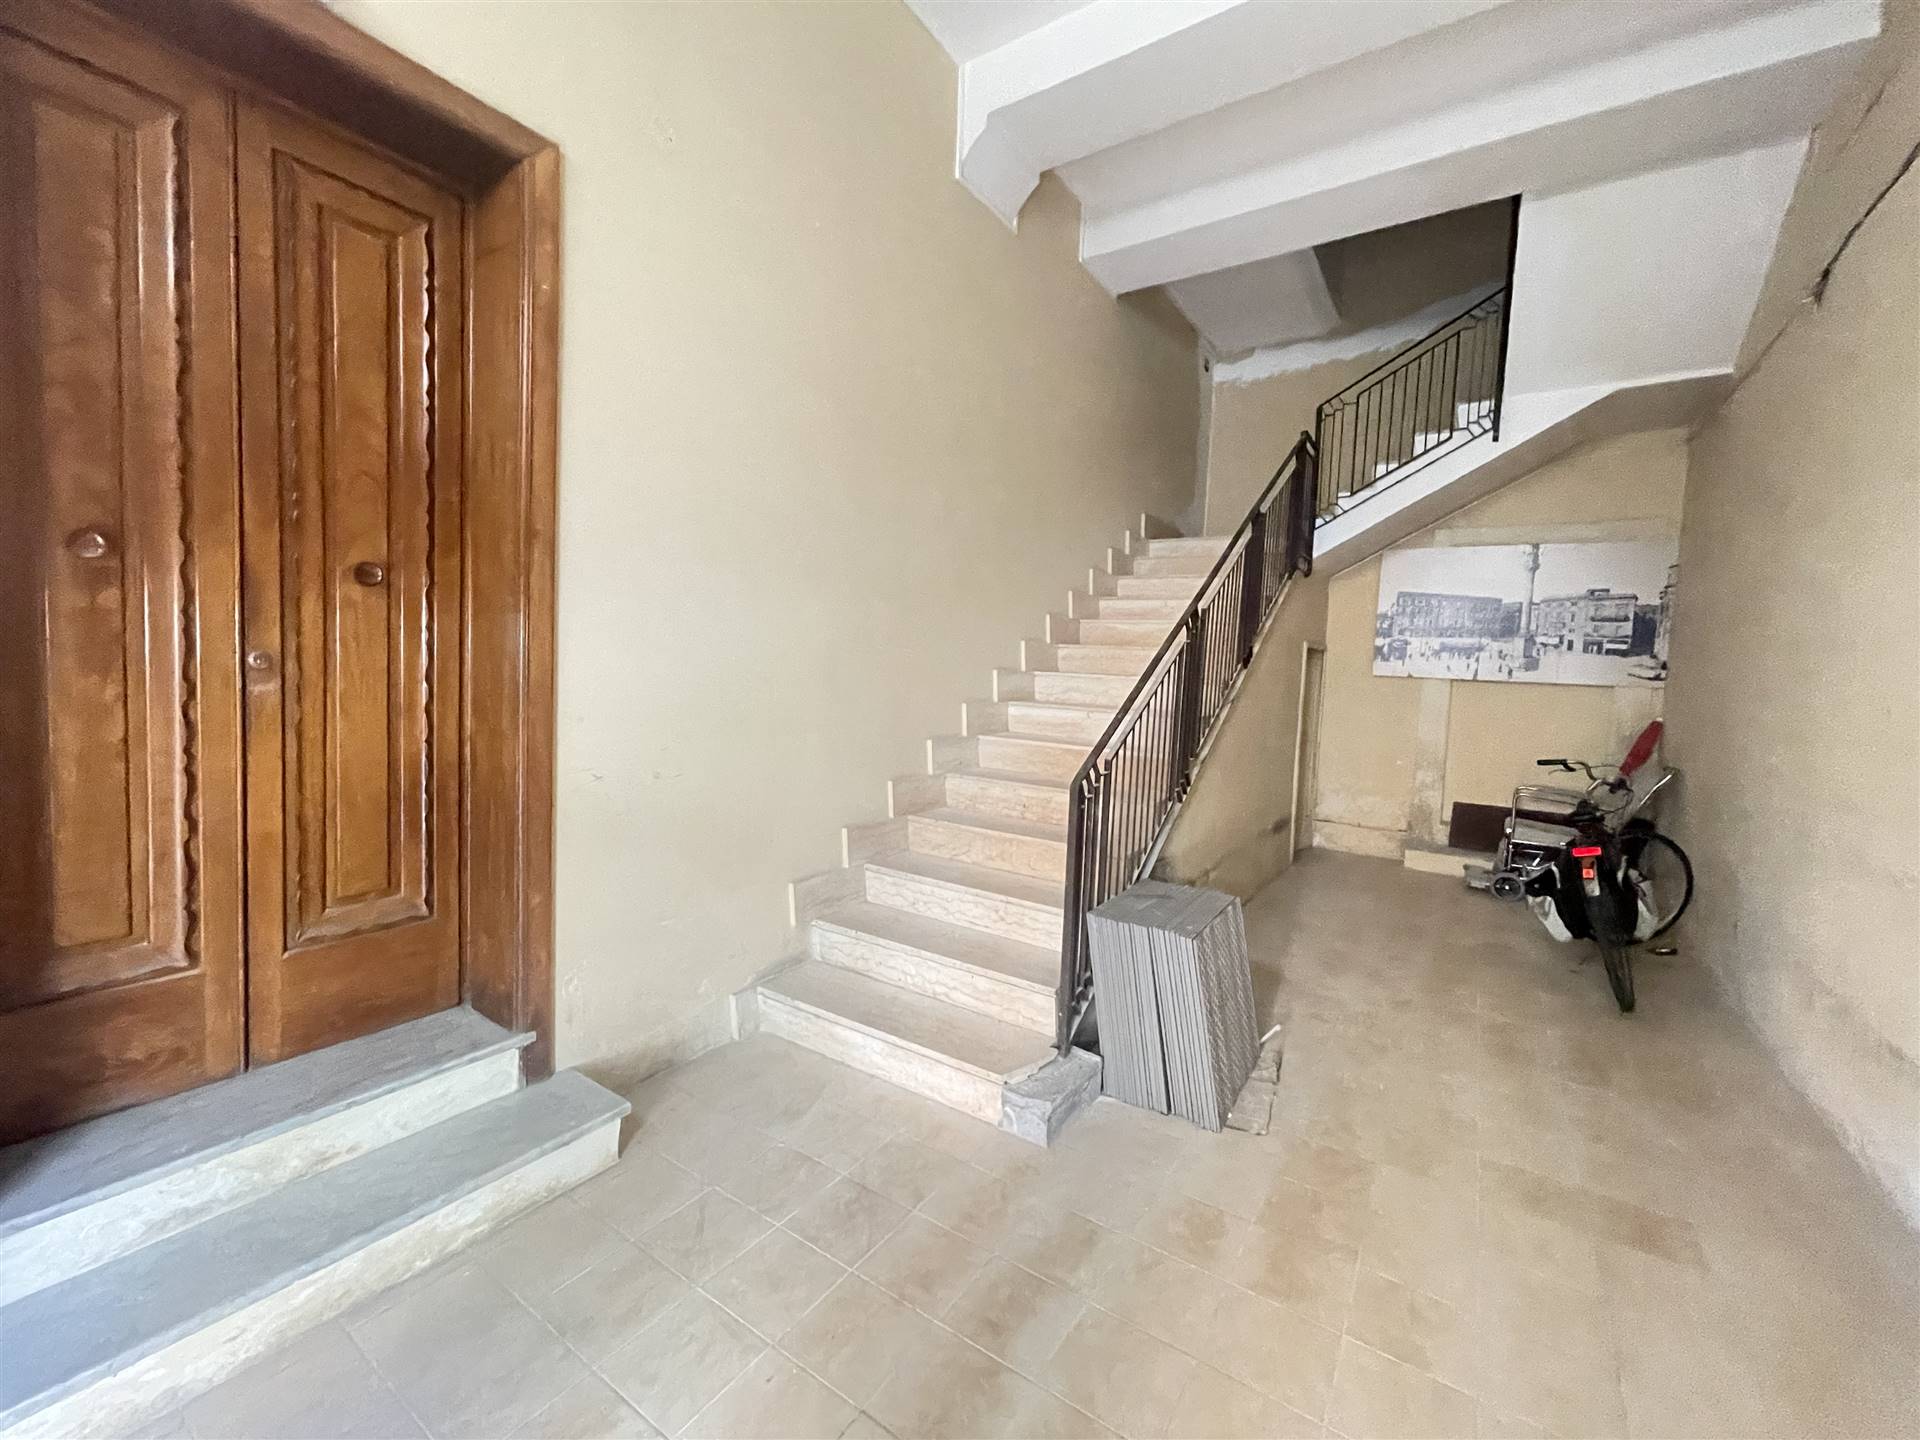 The Agency Immobiliare ha il piacere di proporre in esclusiva due appartamenti con affaccio sulla centralissima Via Sardegna in zona San Lazzaro, a 